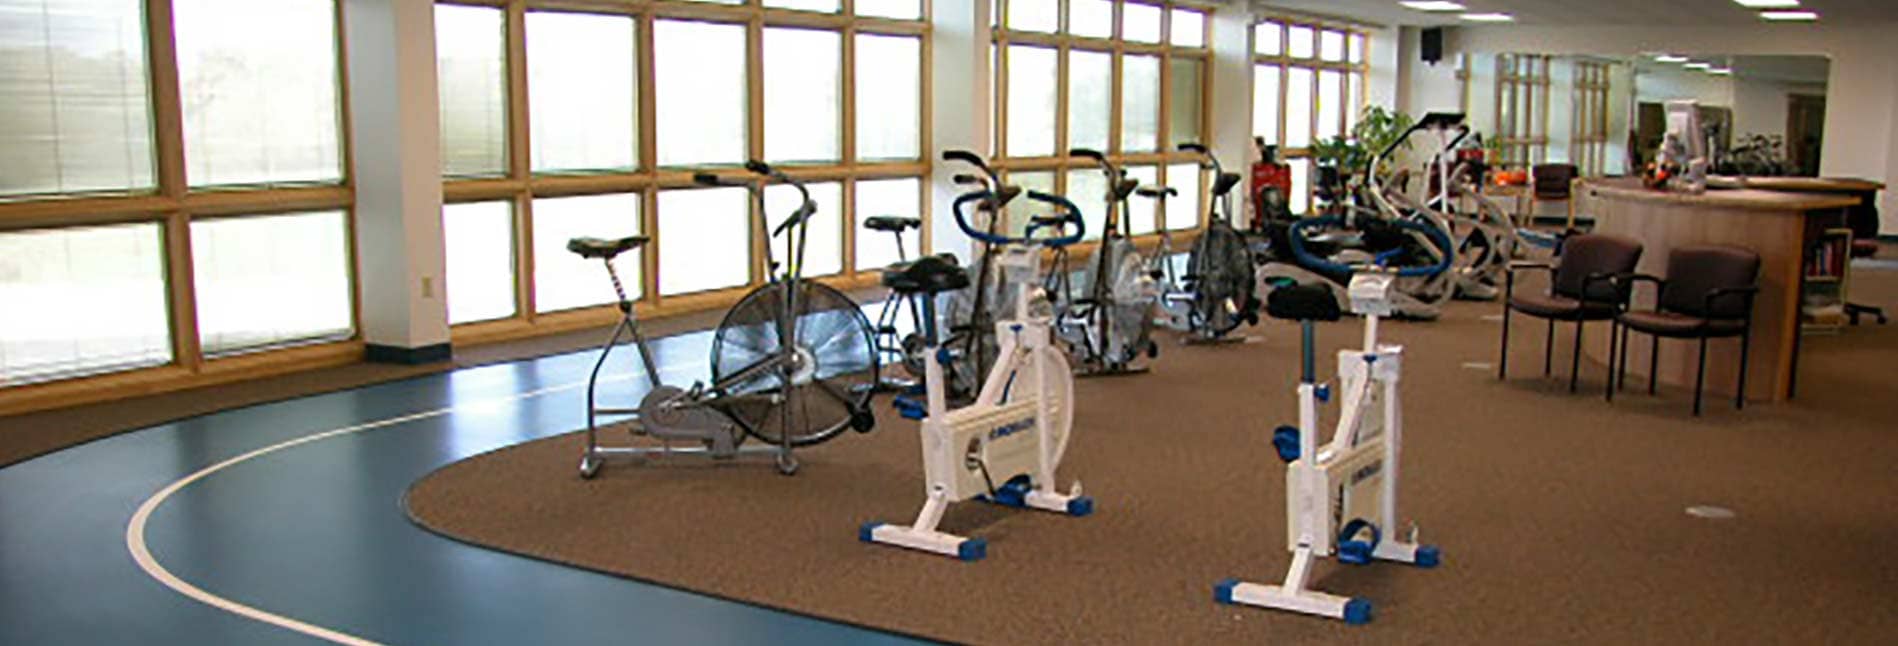 Buckner Wellness Center Exercise Room